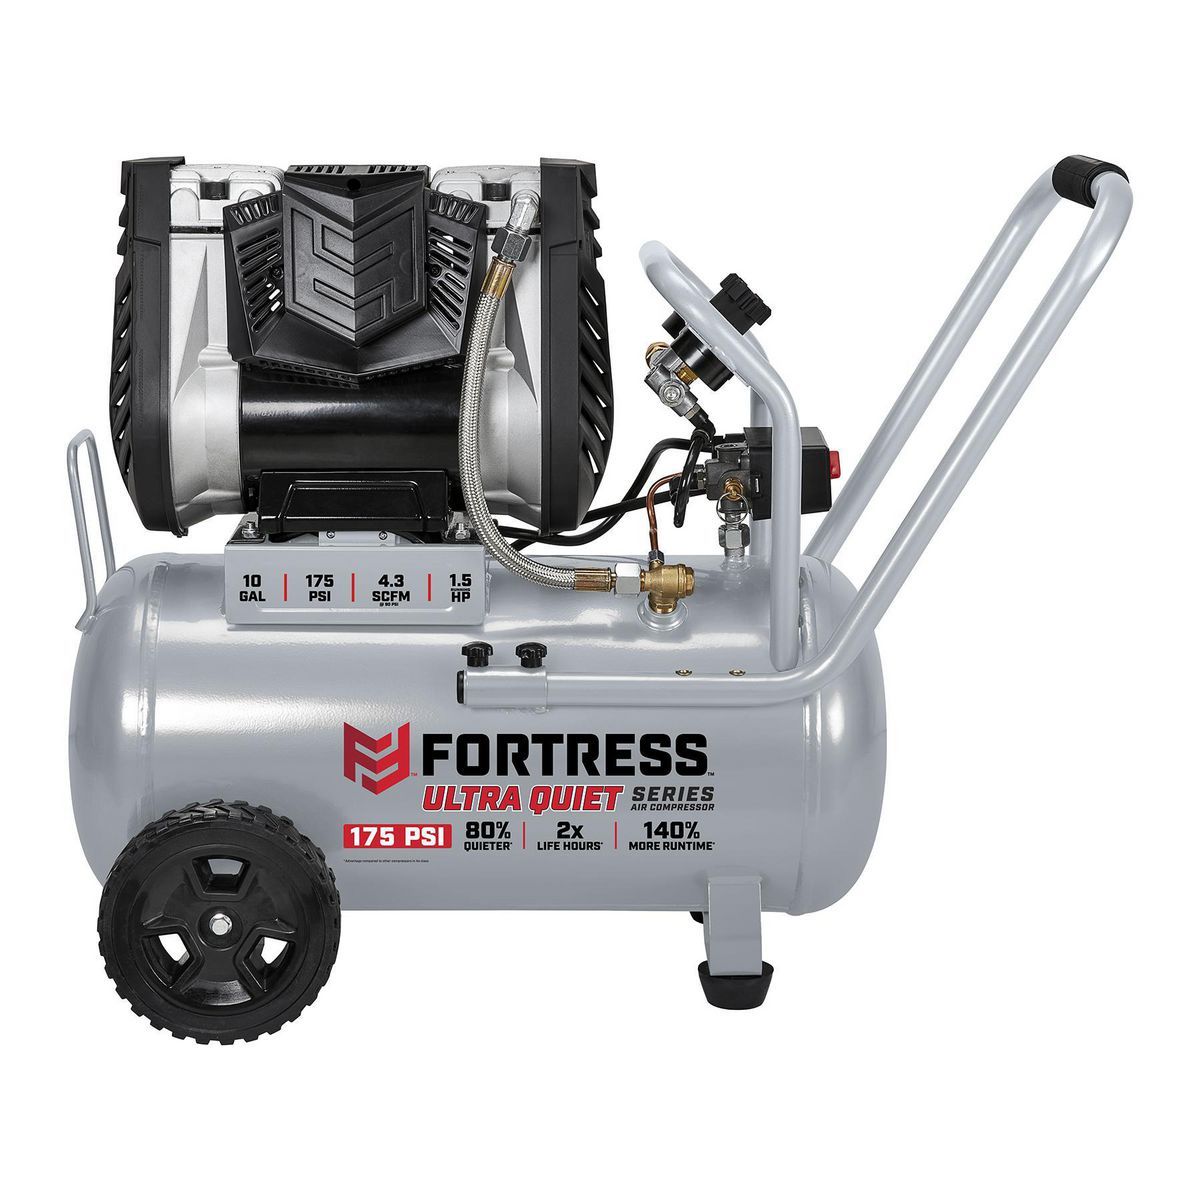 FORTRESS 10 Gallon 175 PSI Ultra Quiet Horizontal Shop/Auto Air Compressor